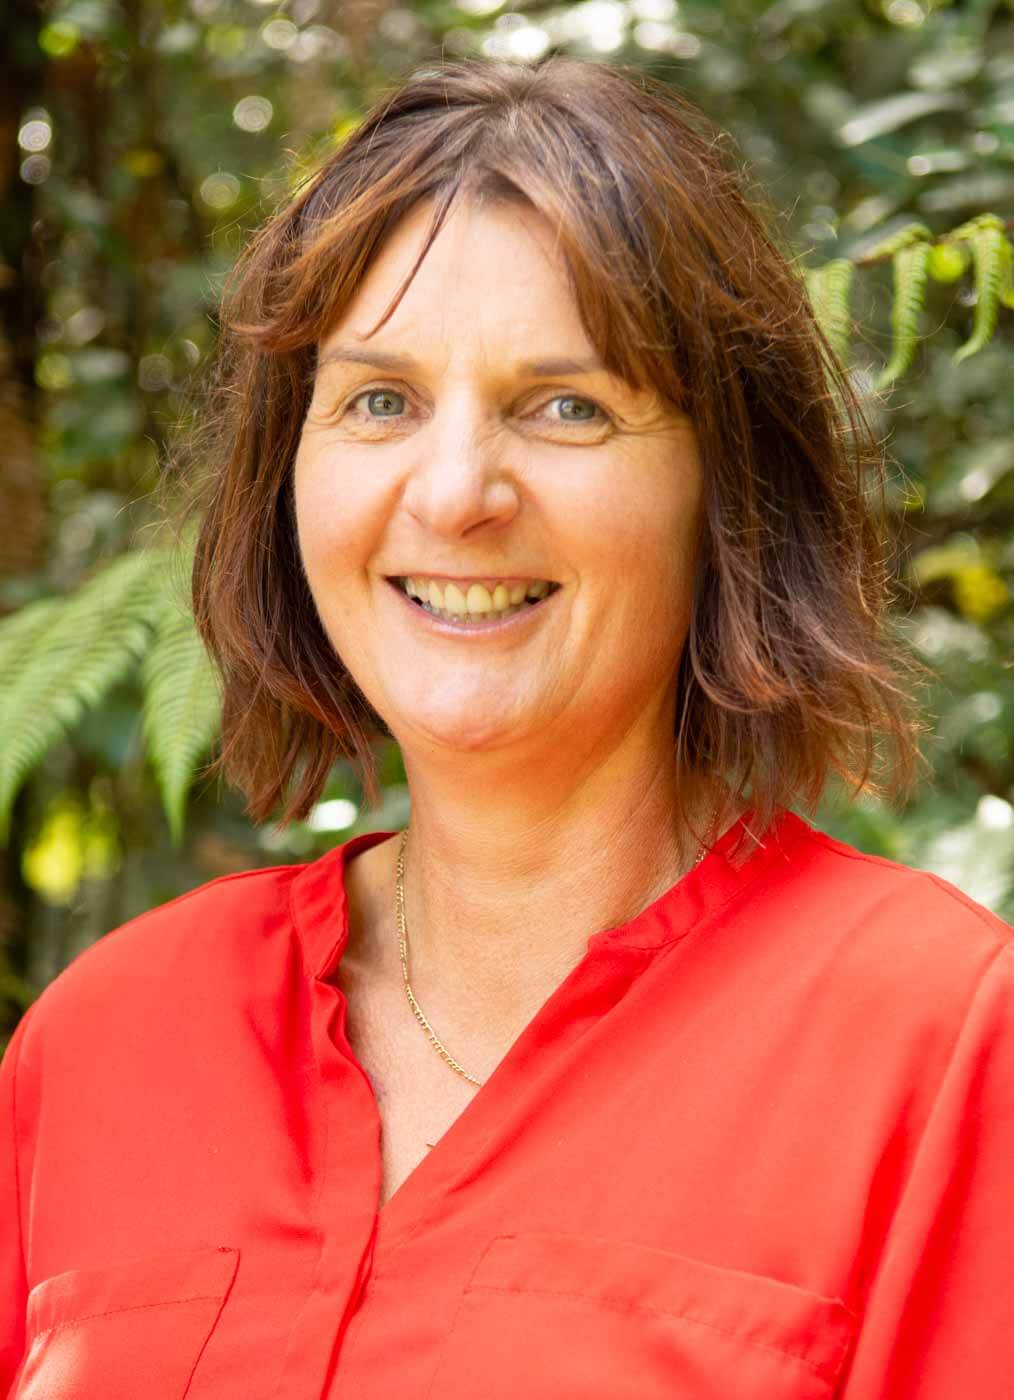 Jolene Godfrey Physiotherapist profile image